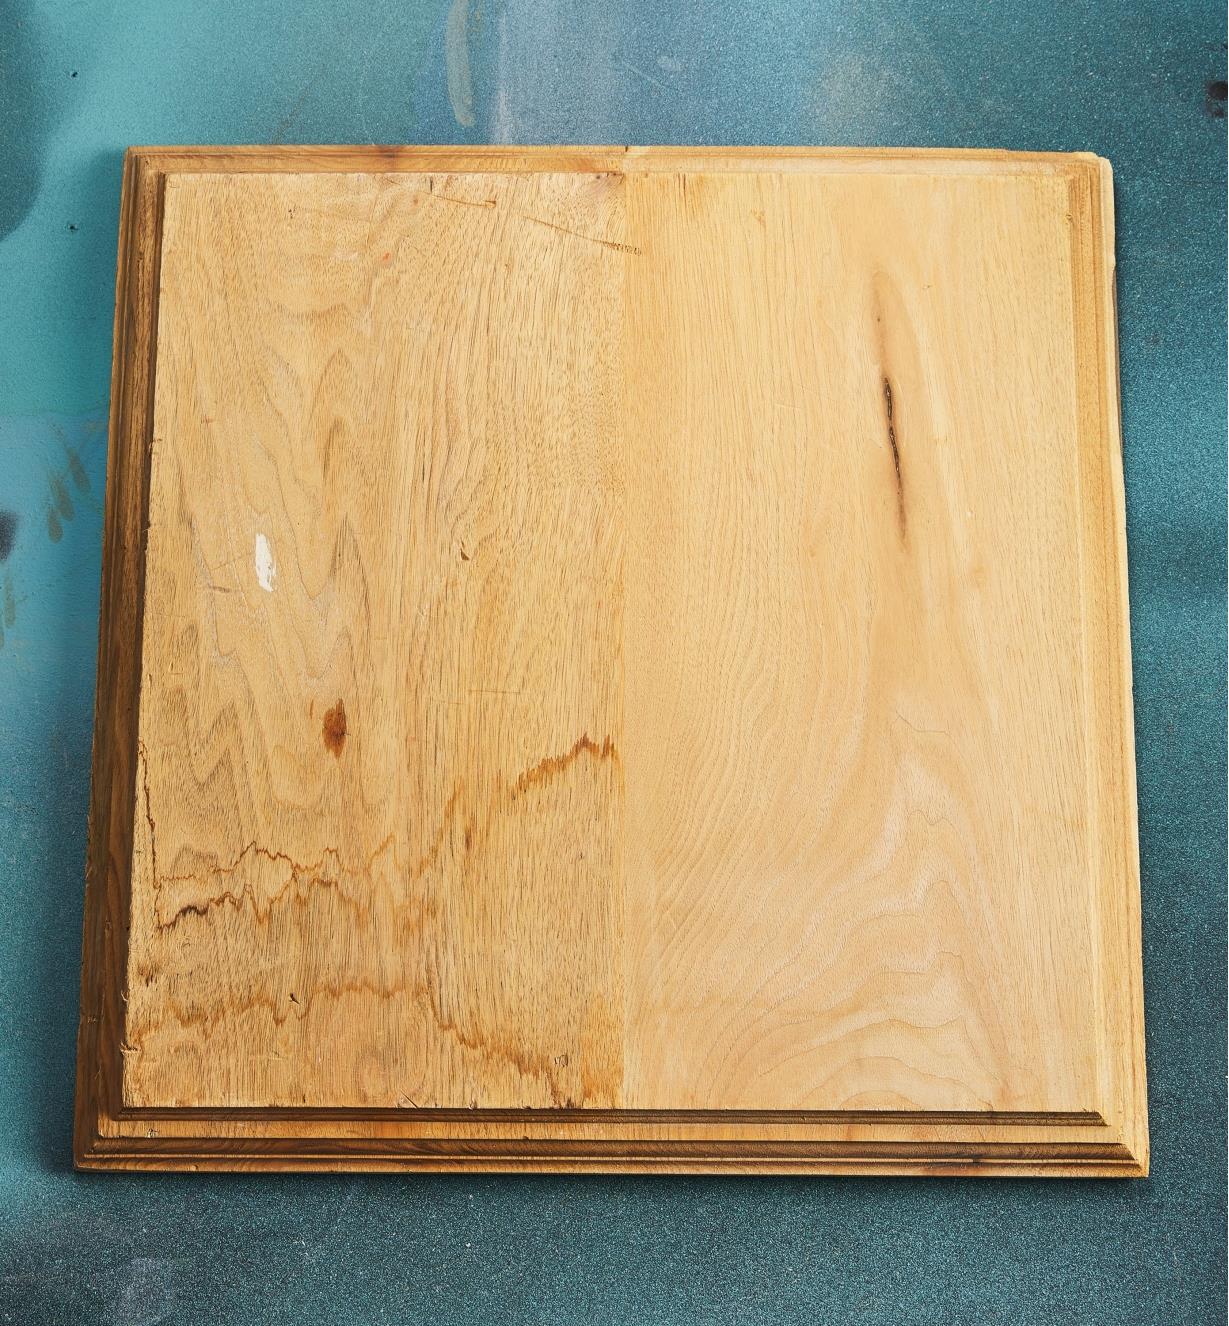 Pièce de bois dont la moitié gauche est tachée et la moitié droite propre et de teinte uniforme